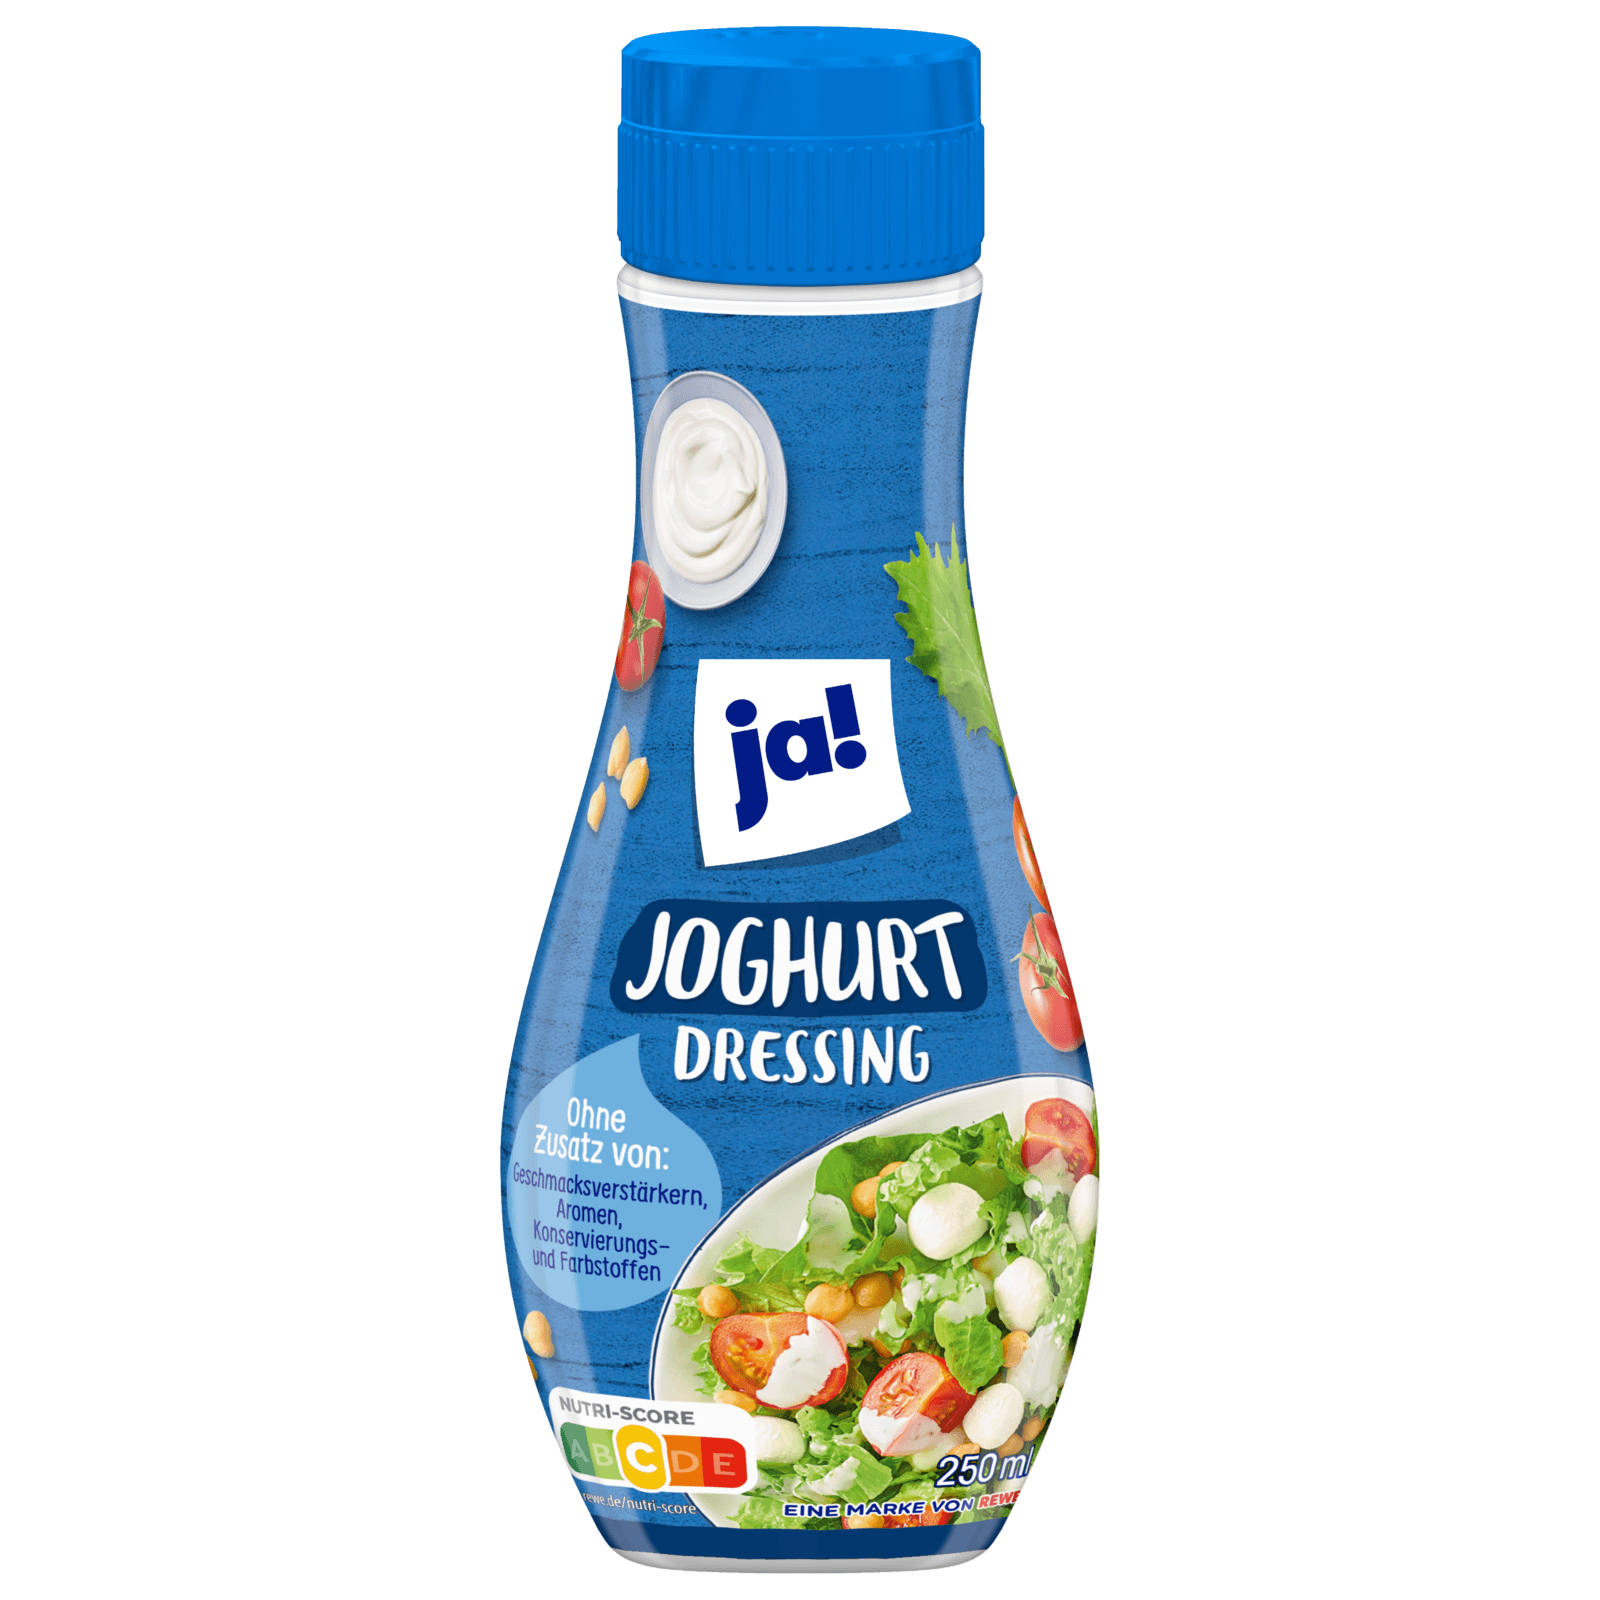 ja! Joghurt Dressing 250ml bei REWE online bestellen!